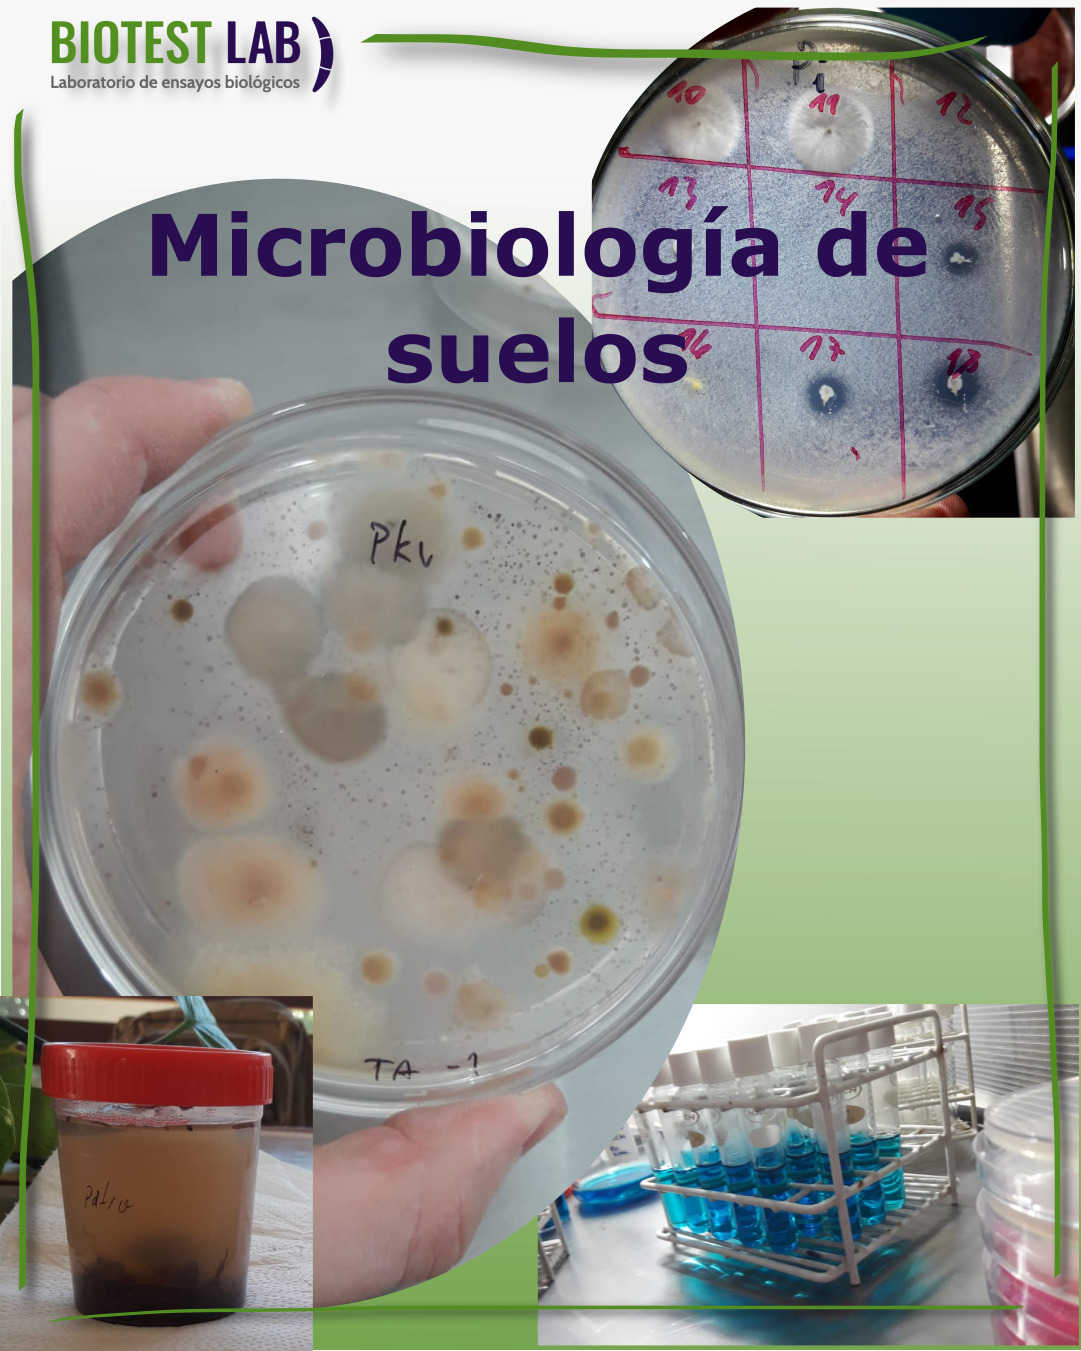 Microbiología Agrícola: concepto e importancia